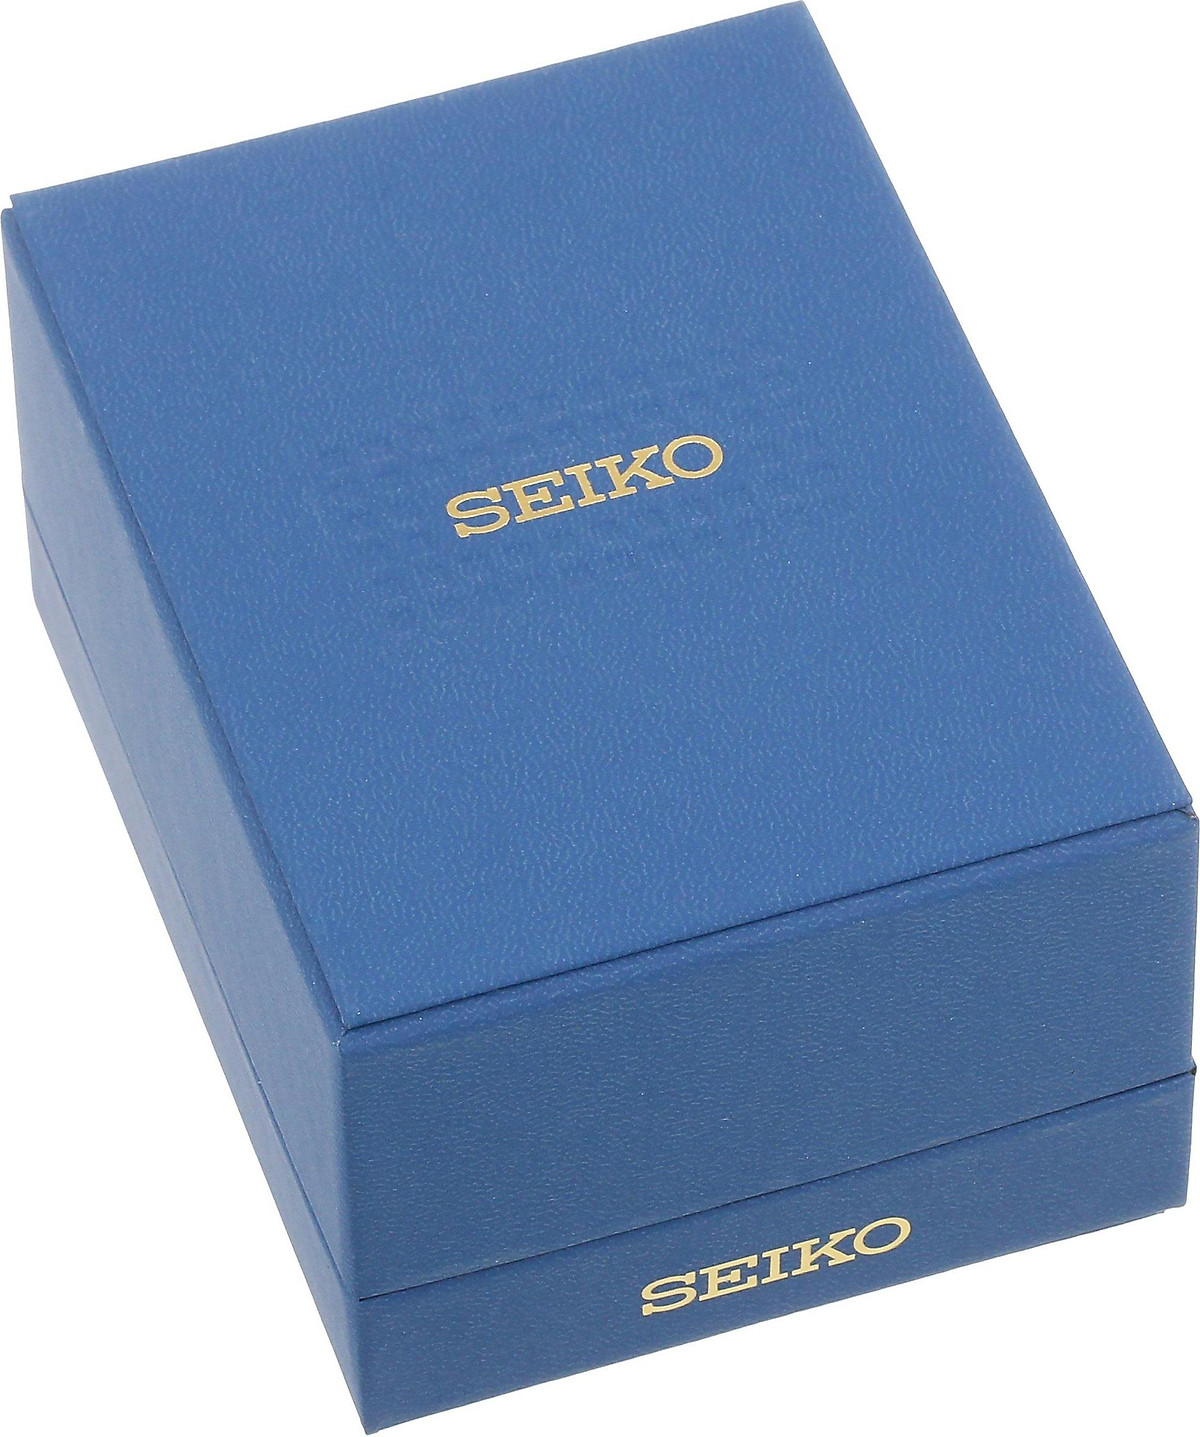 Mua Đồng hồ Seiko nam SGF206 thép không gỉ tông màu vàng